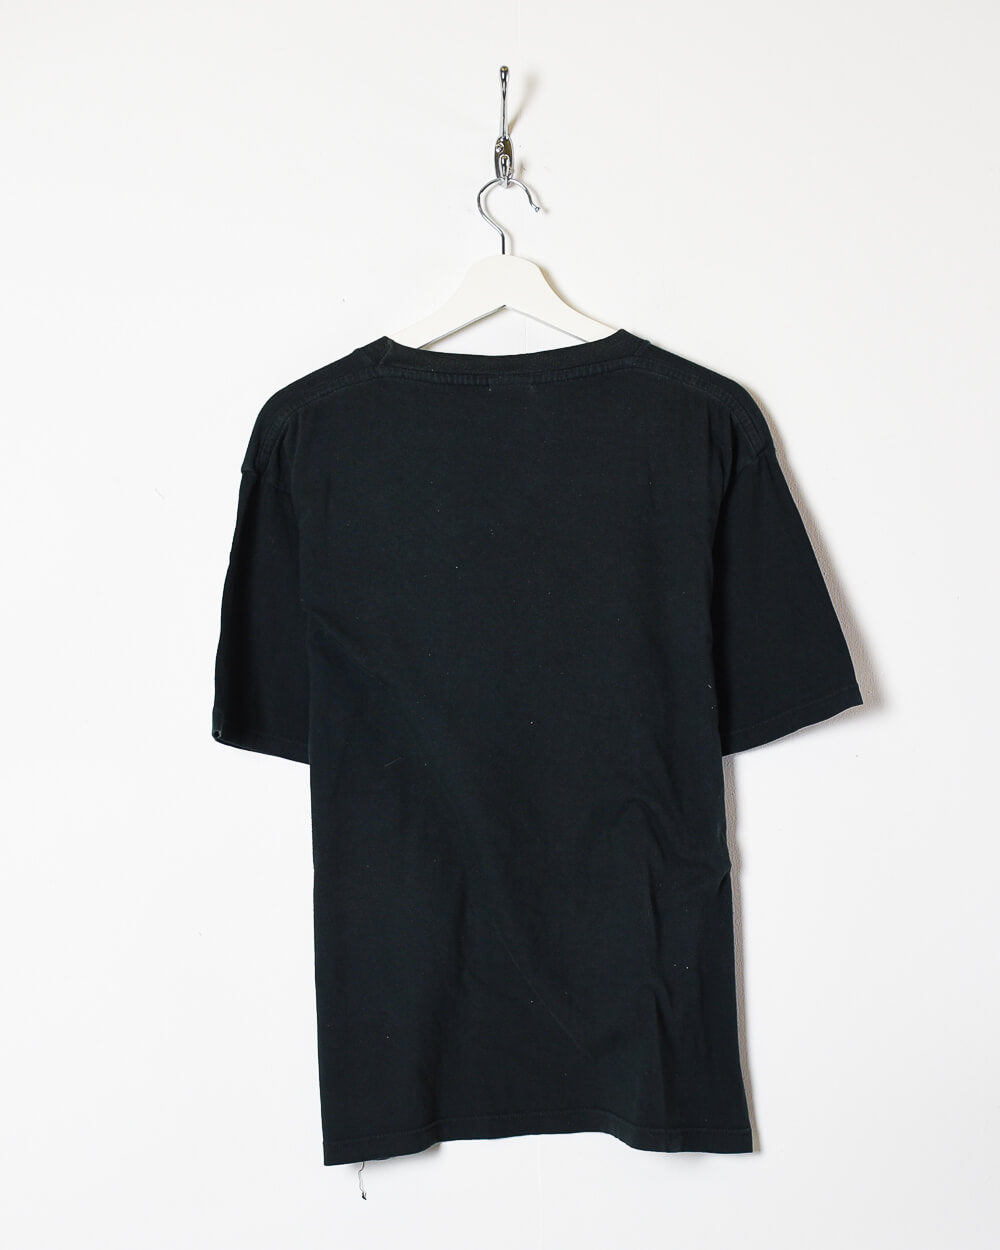 Black Nike T-Shirt - Medium